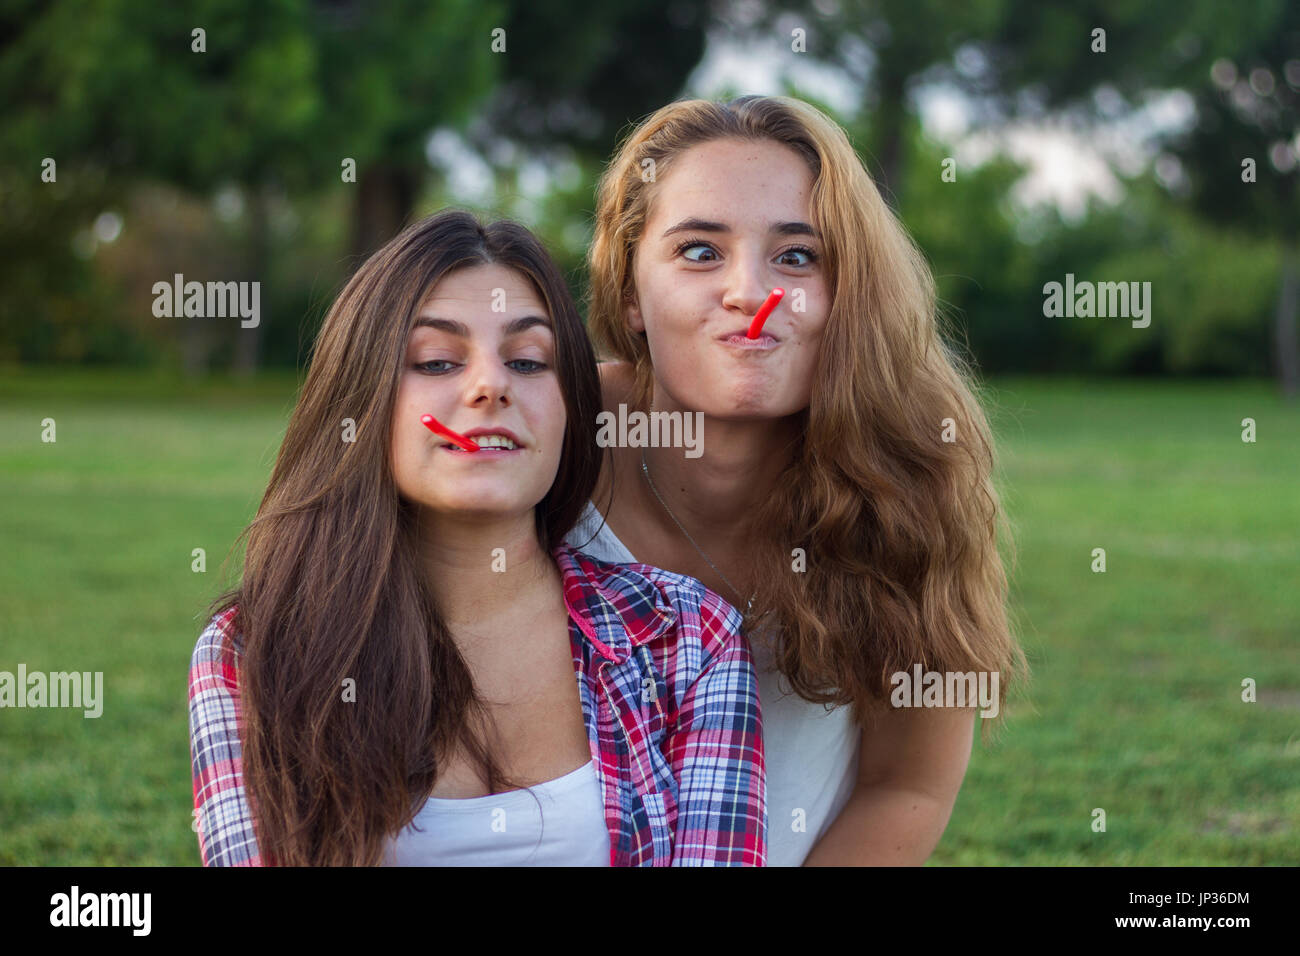 Female friends enjoying en mangeant une réglisse rouge maison de vacances dans le parc. Ils sont jeunes, l'un a les yeux bleus et l'autre est blonde. Banque D'Images